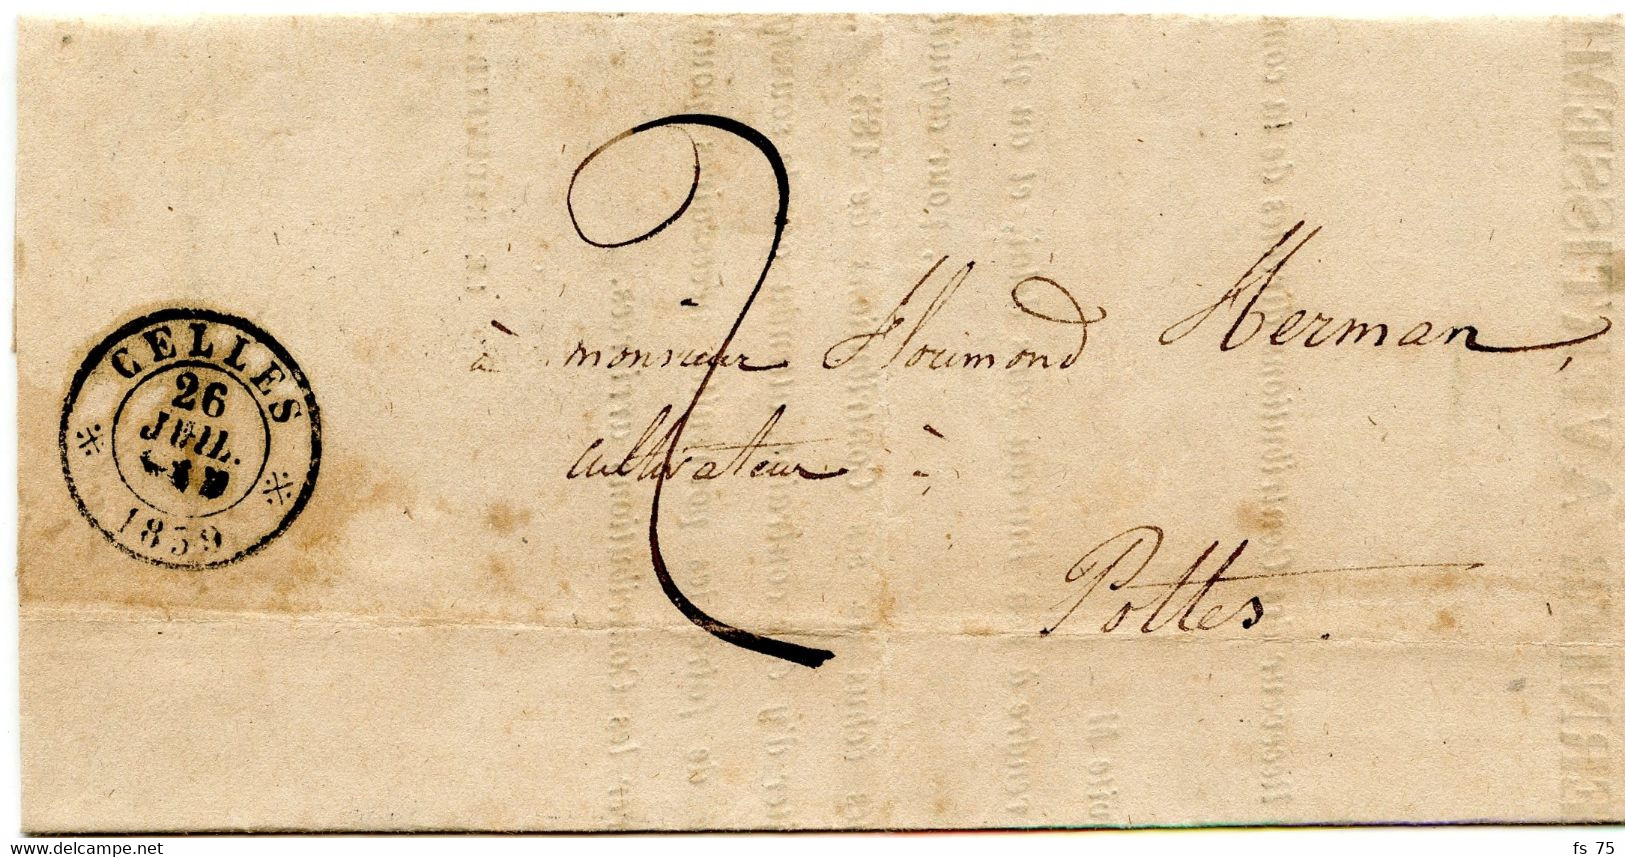 BELGIQUE - TAD DOUBLE CERCLE CELLES SUR LETTRE TAXEE, 1859 - Brieven En Documenten